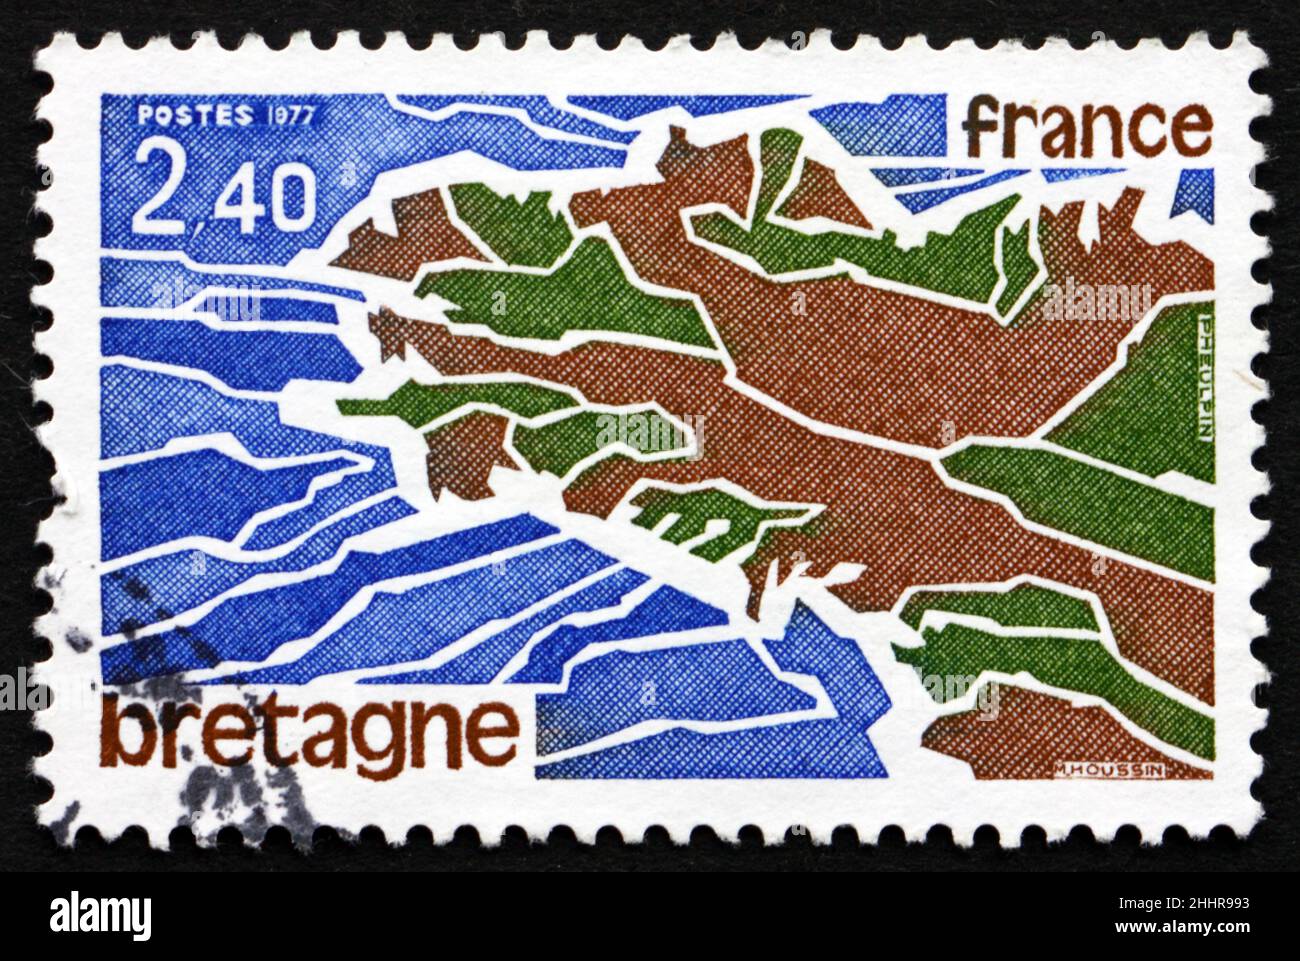 FRANCIA - CIRCA 1977: Un francobollo stampato in Francia mostra la carta della Bretagna, una regione culturale nella Francia nord-occidentale, circa 1977 Foto Stock